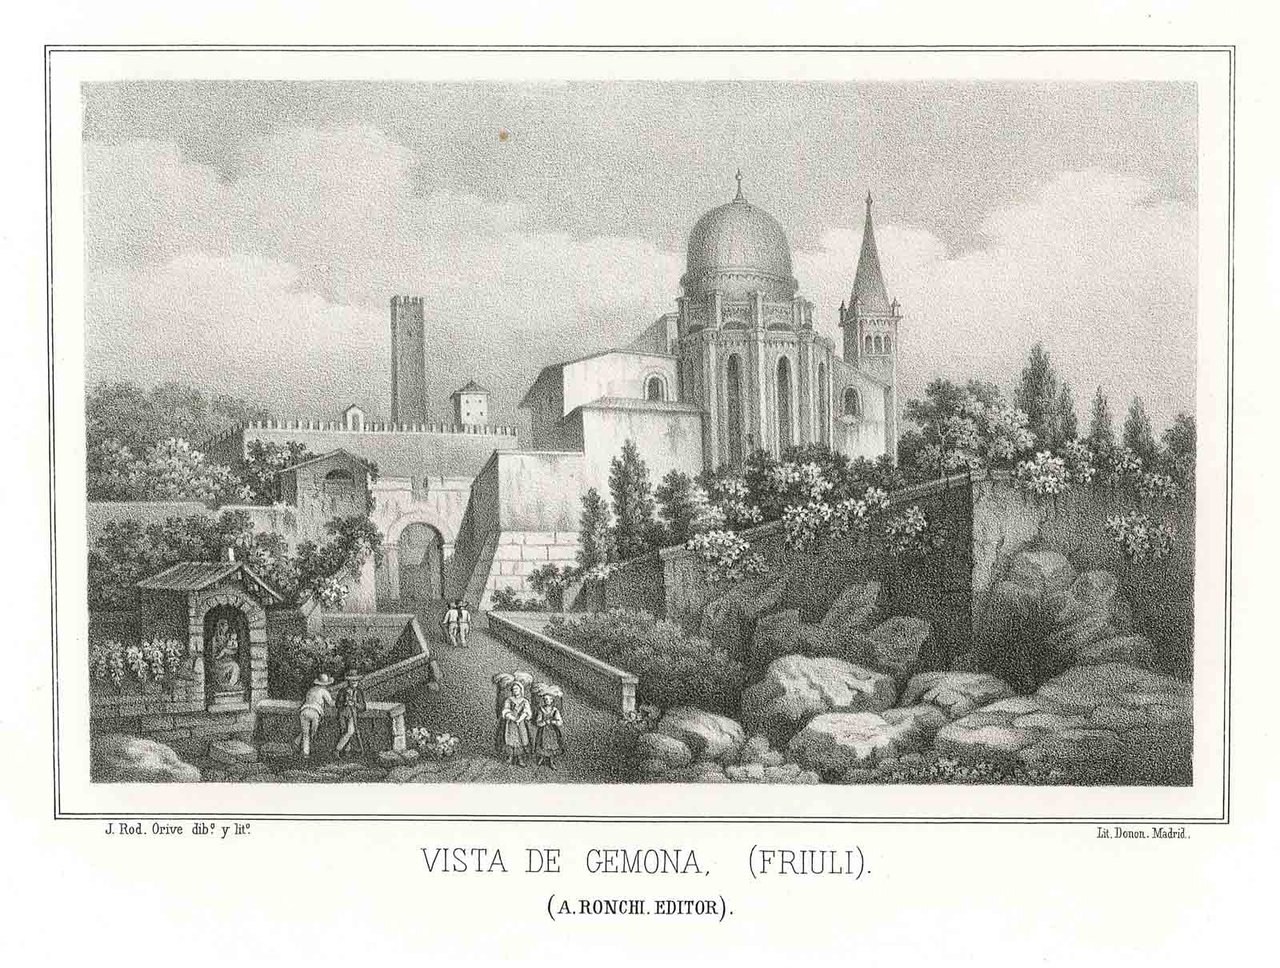 Vista de Gemona (Friuli)